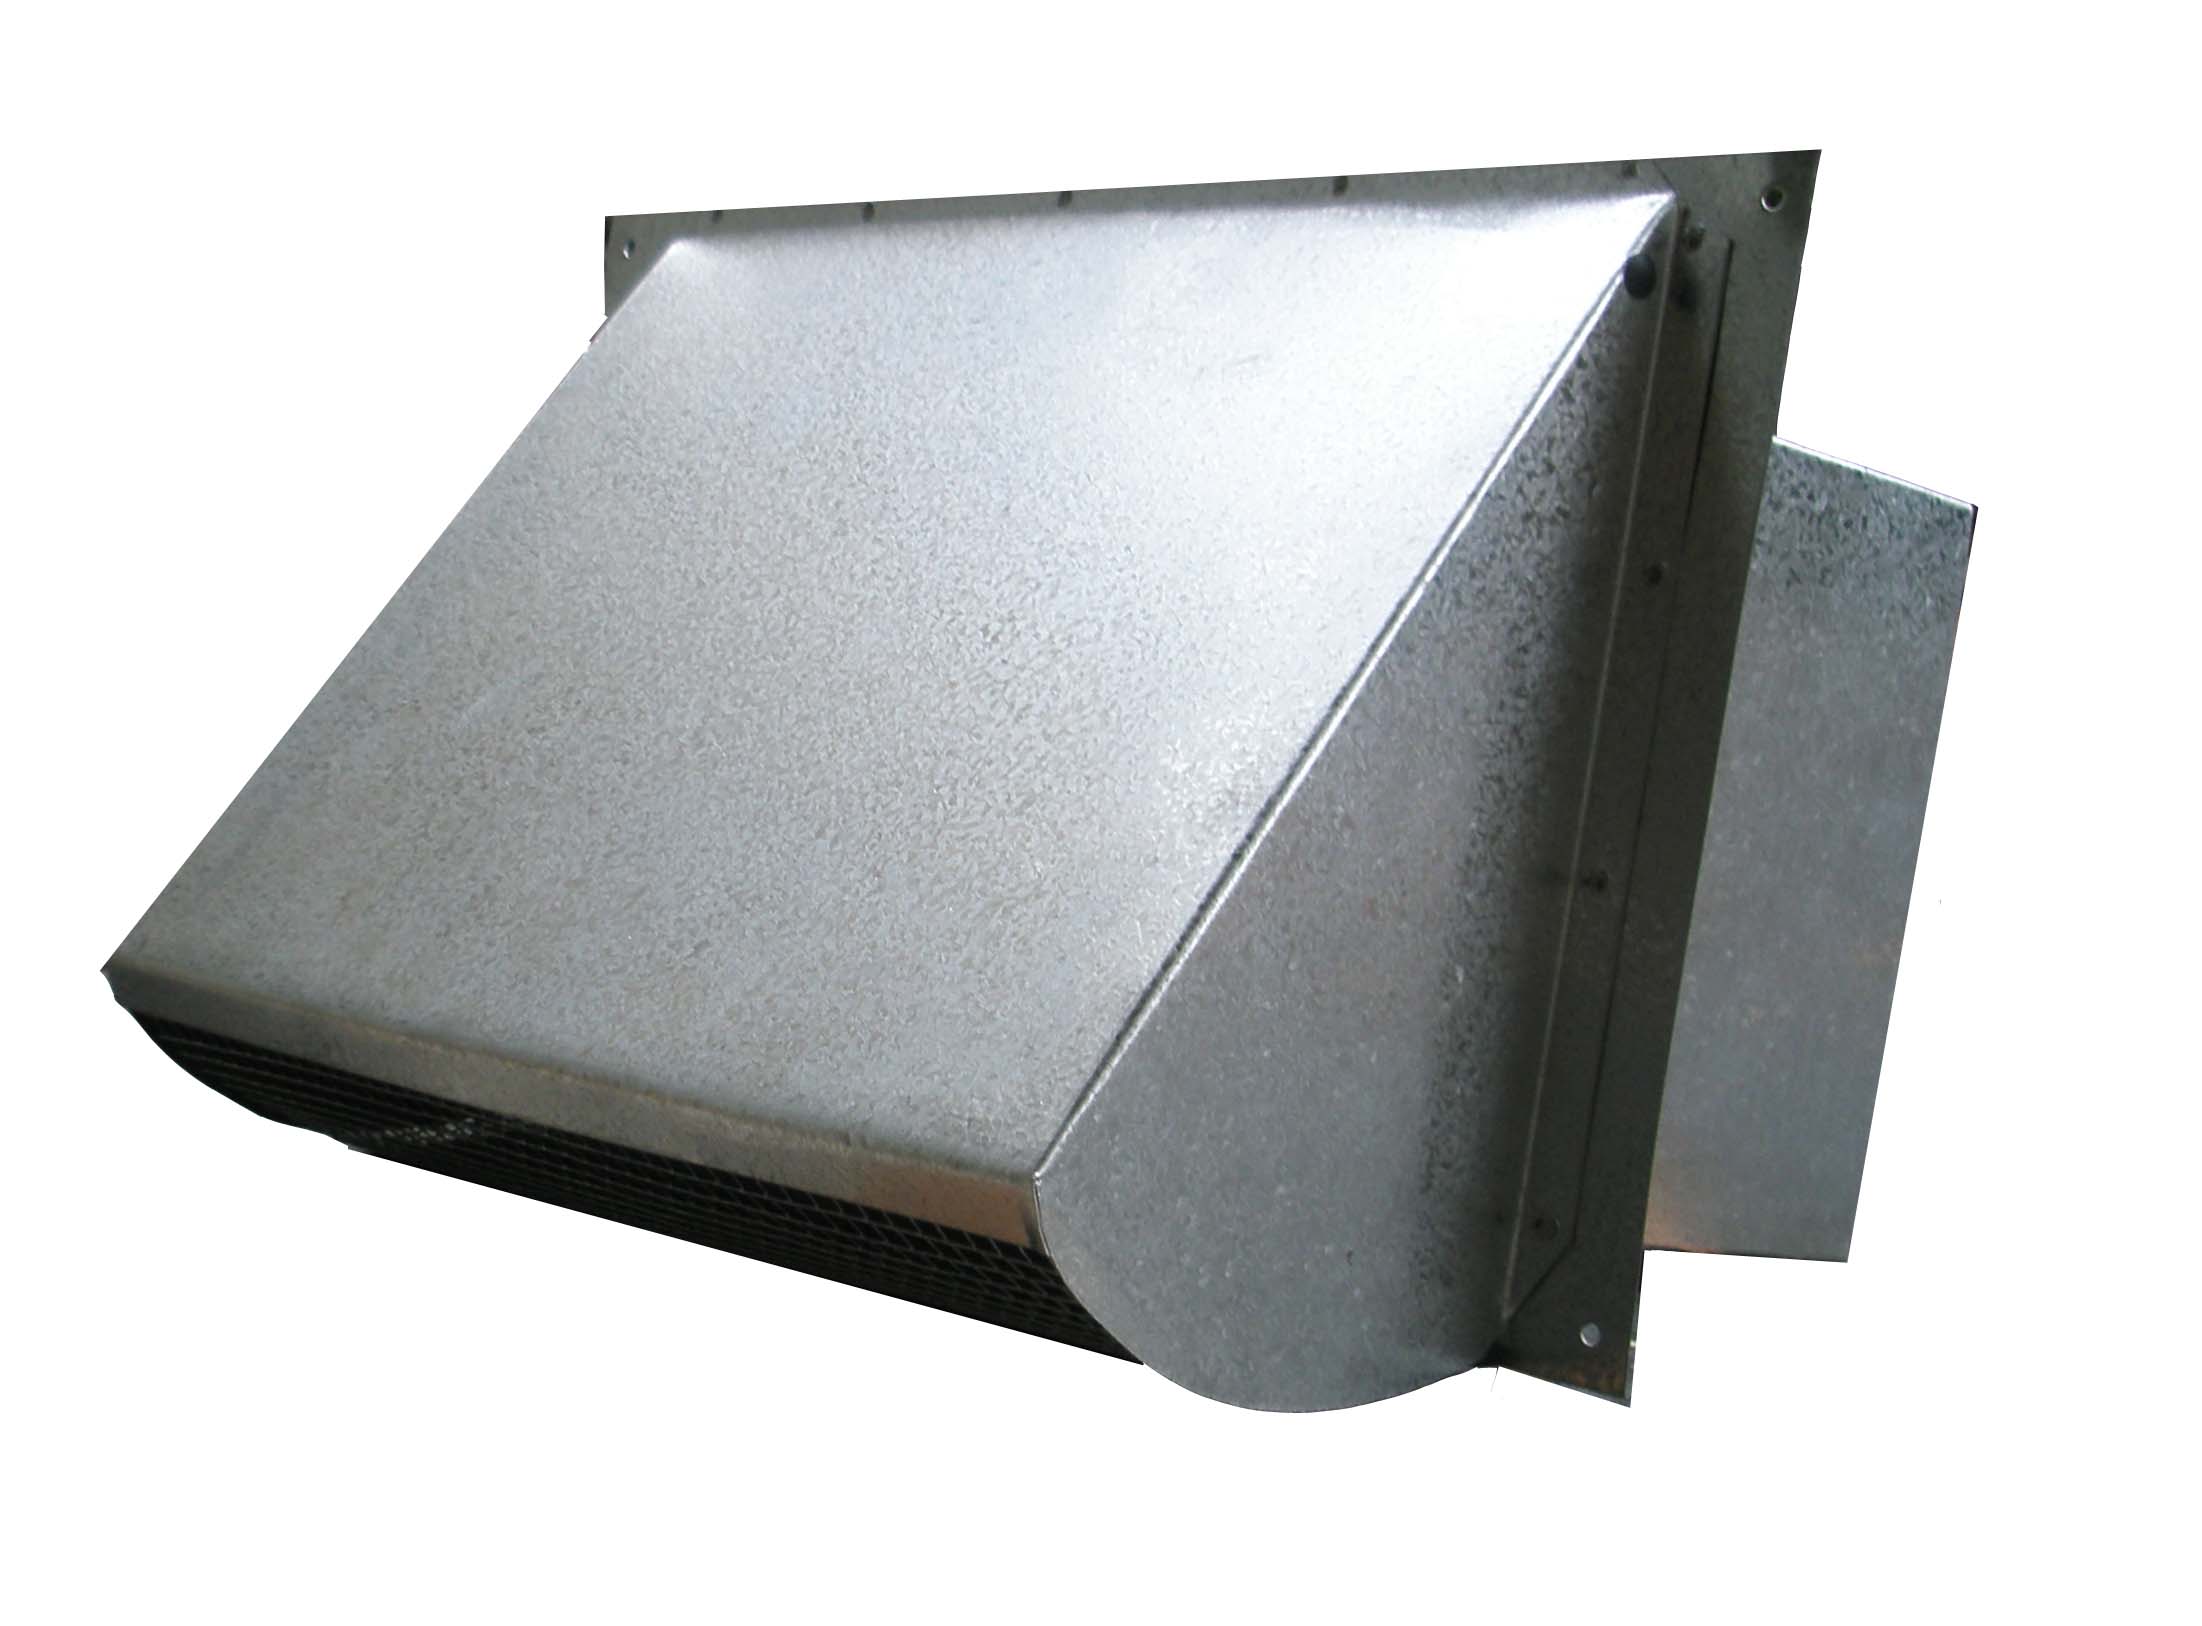 6 x 10 outdoor metal range hood vent cover